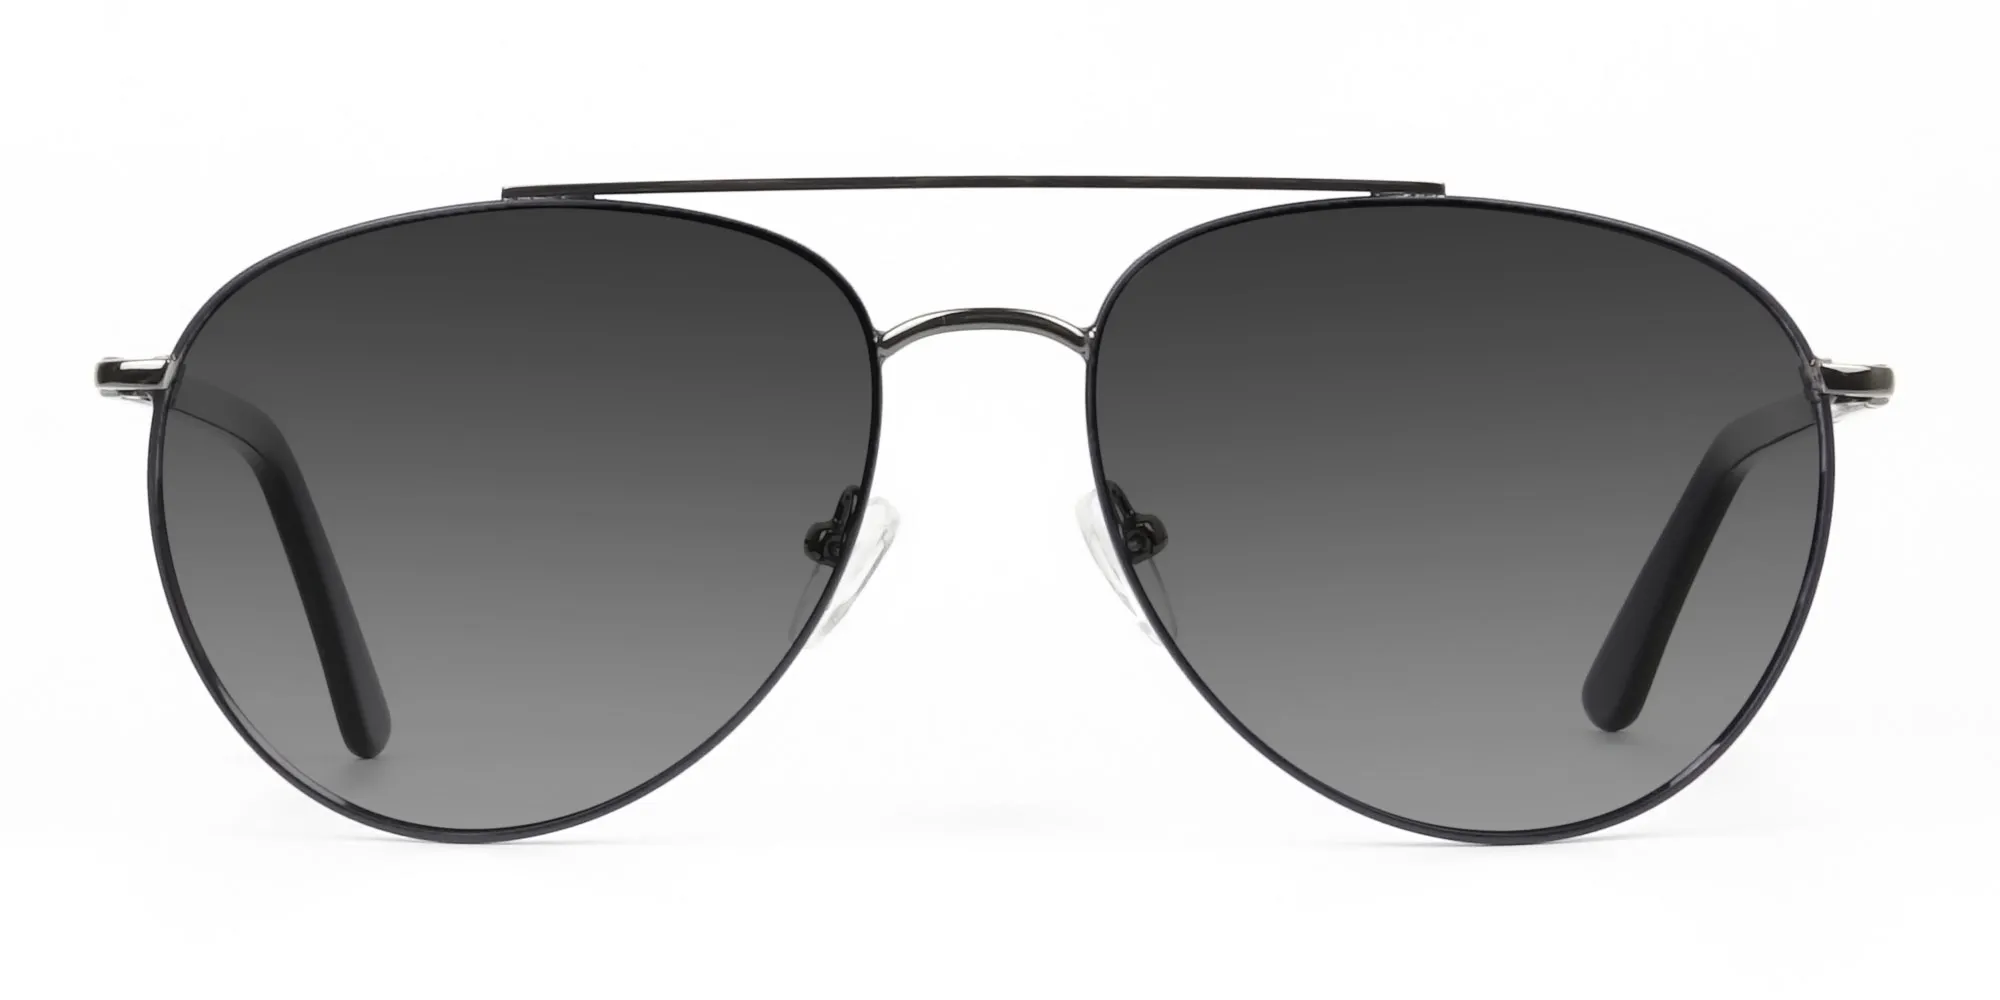 ultralight-dark-navy-blue-aviator-grey-tinted-sunglasses-frames-2